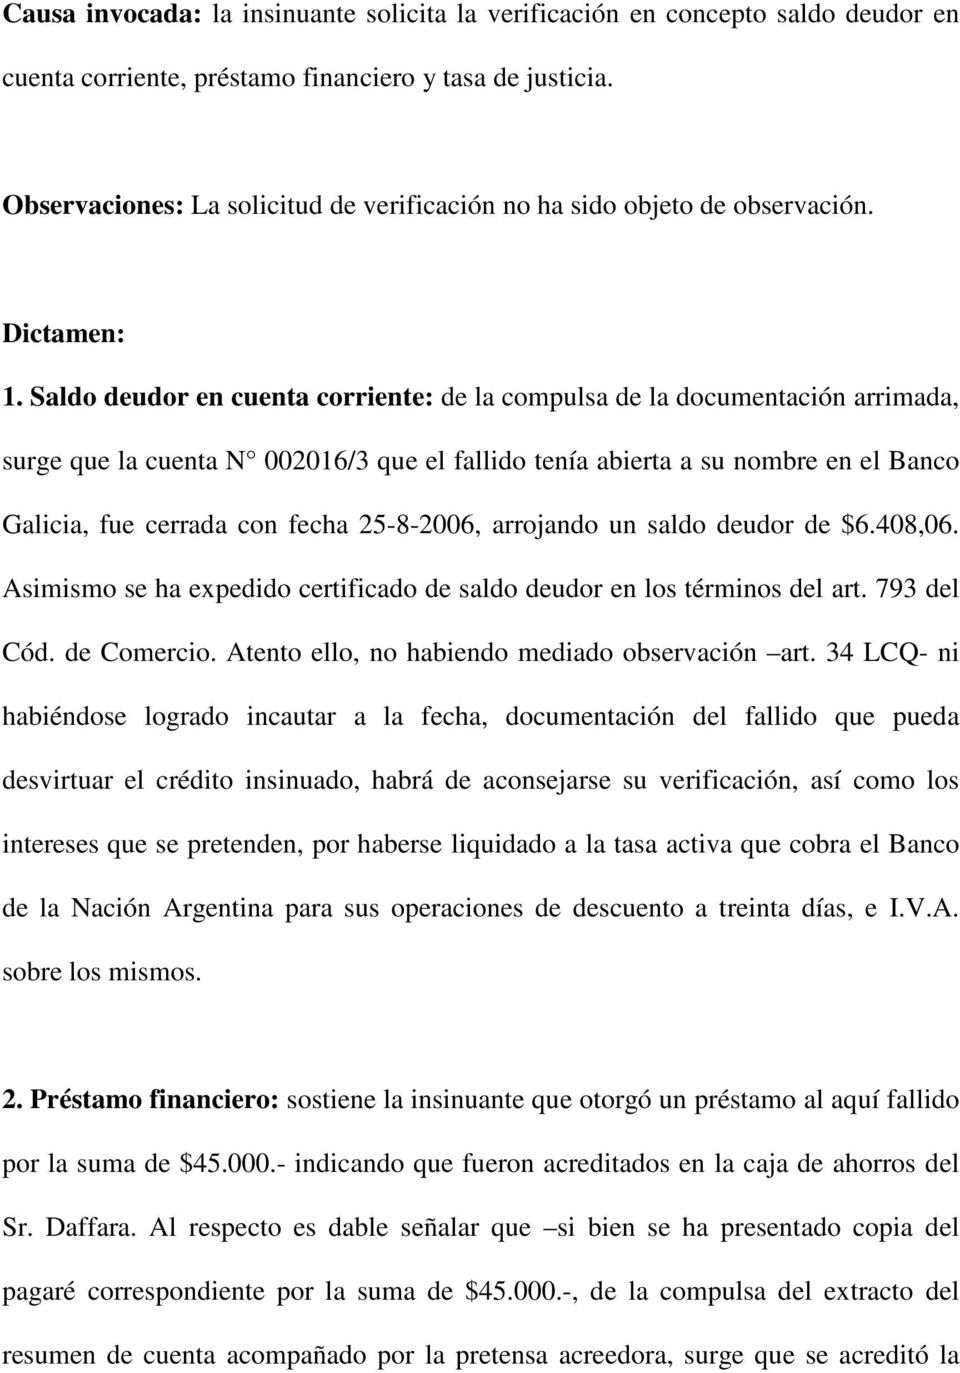 Saldo deudor en cuenta corriente: de la compulsa de la documentación arrimada, surge que la cuenta N 002016/3 que el fallido tenía abierta a su nombre en el Banco Galicia, fue cerrada con fecha